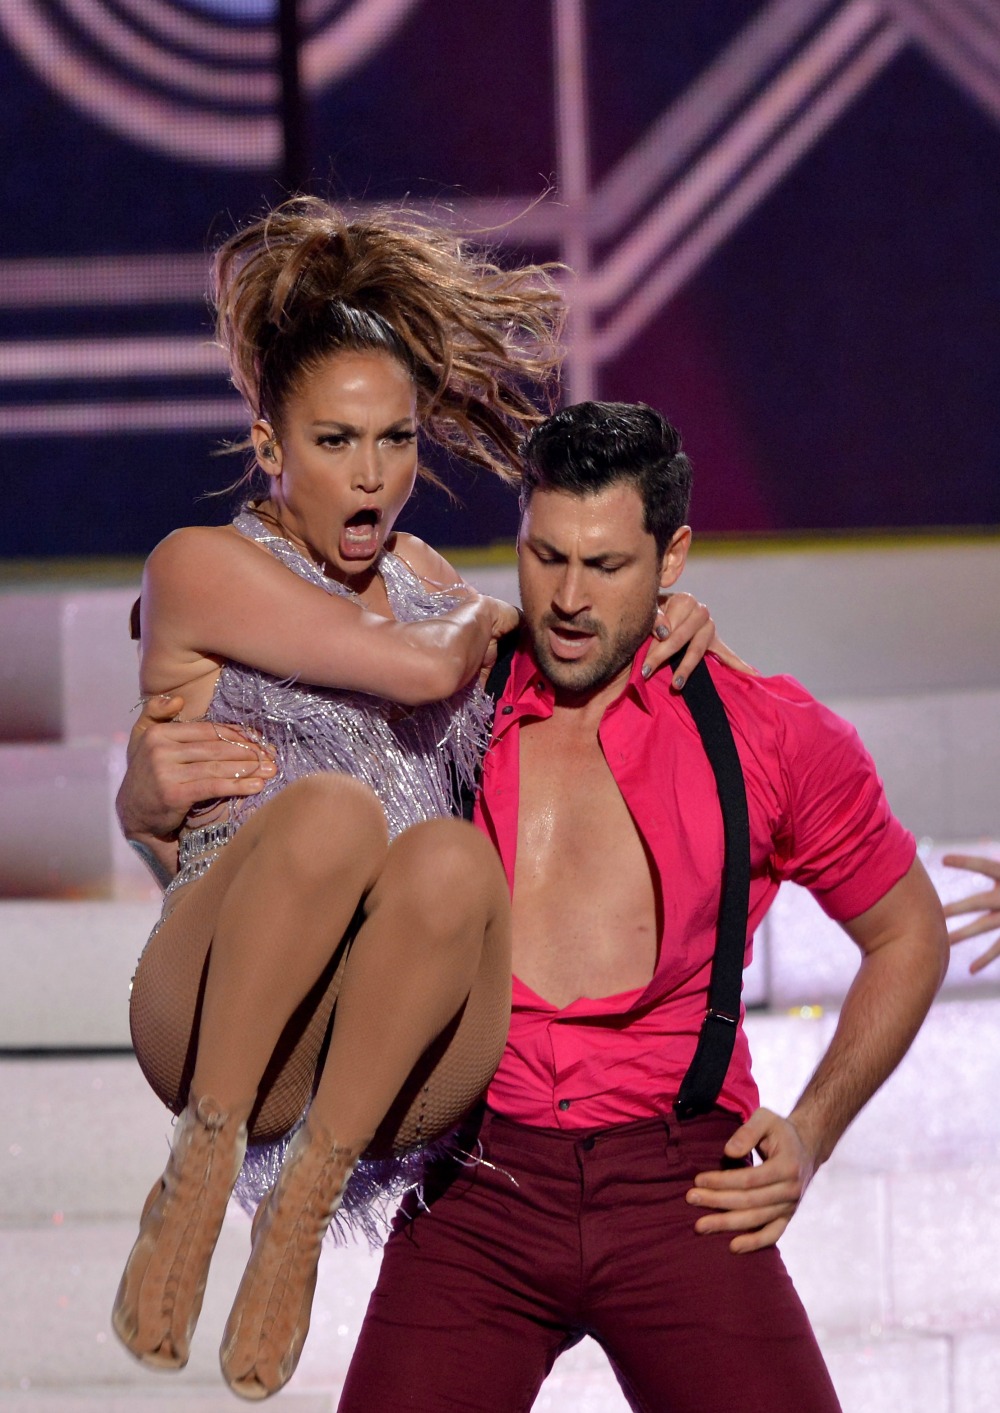 Miranda Lambert Upskirt - Who Has Jennifer Lopez Dated? See J. Lo's Ex-Husbands, More